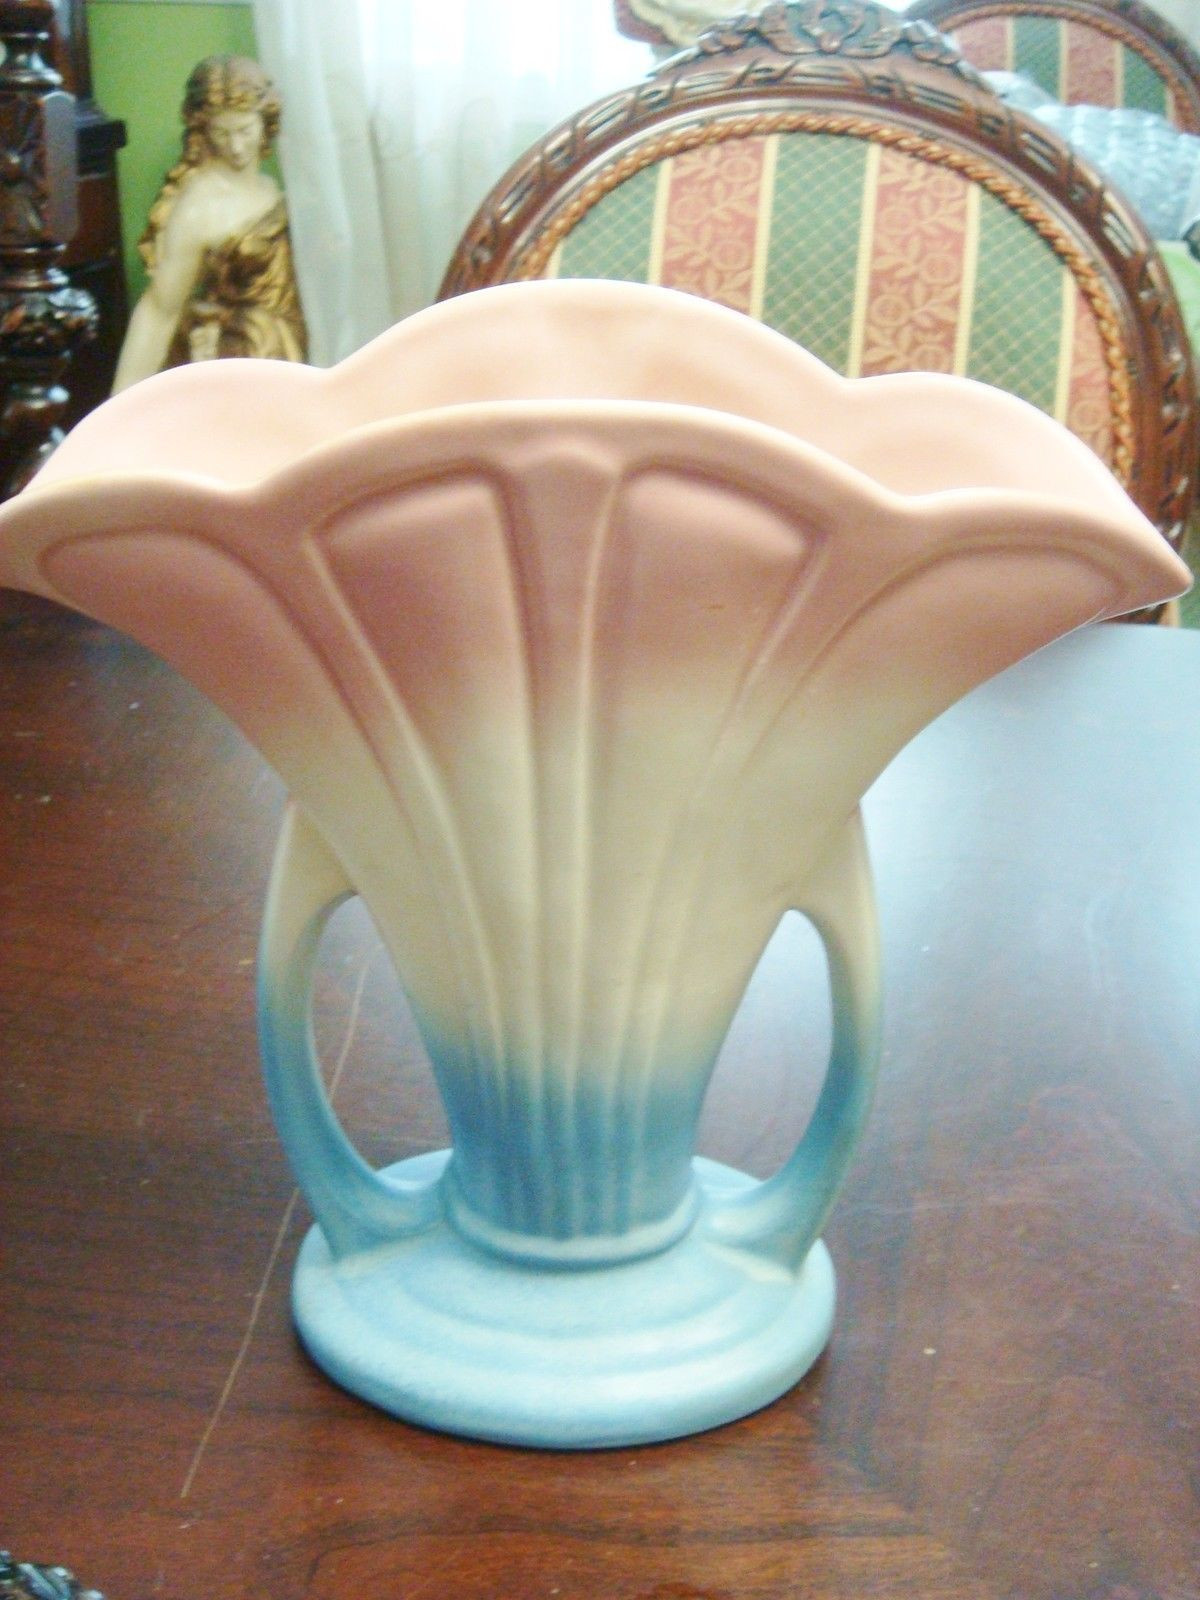 hull usa vase of hull art pottery usa 47 9 mardi gras granada fan vase pink blue pertaining to hull art pottery usa 47 9 mardi gras granada fan vase pink blue light cream